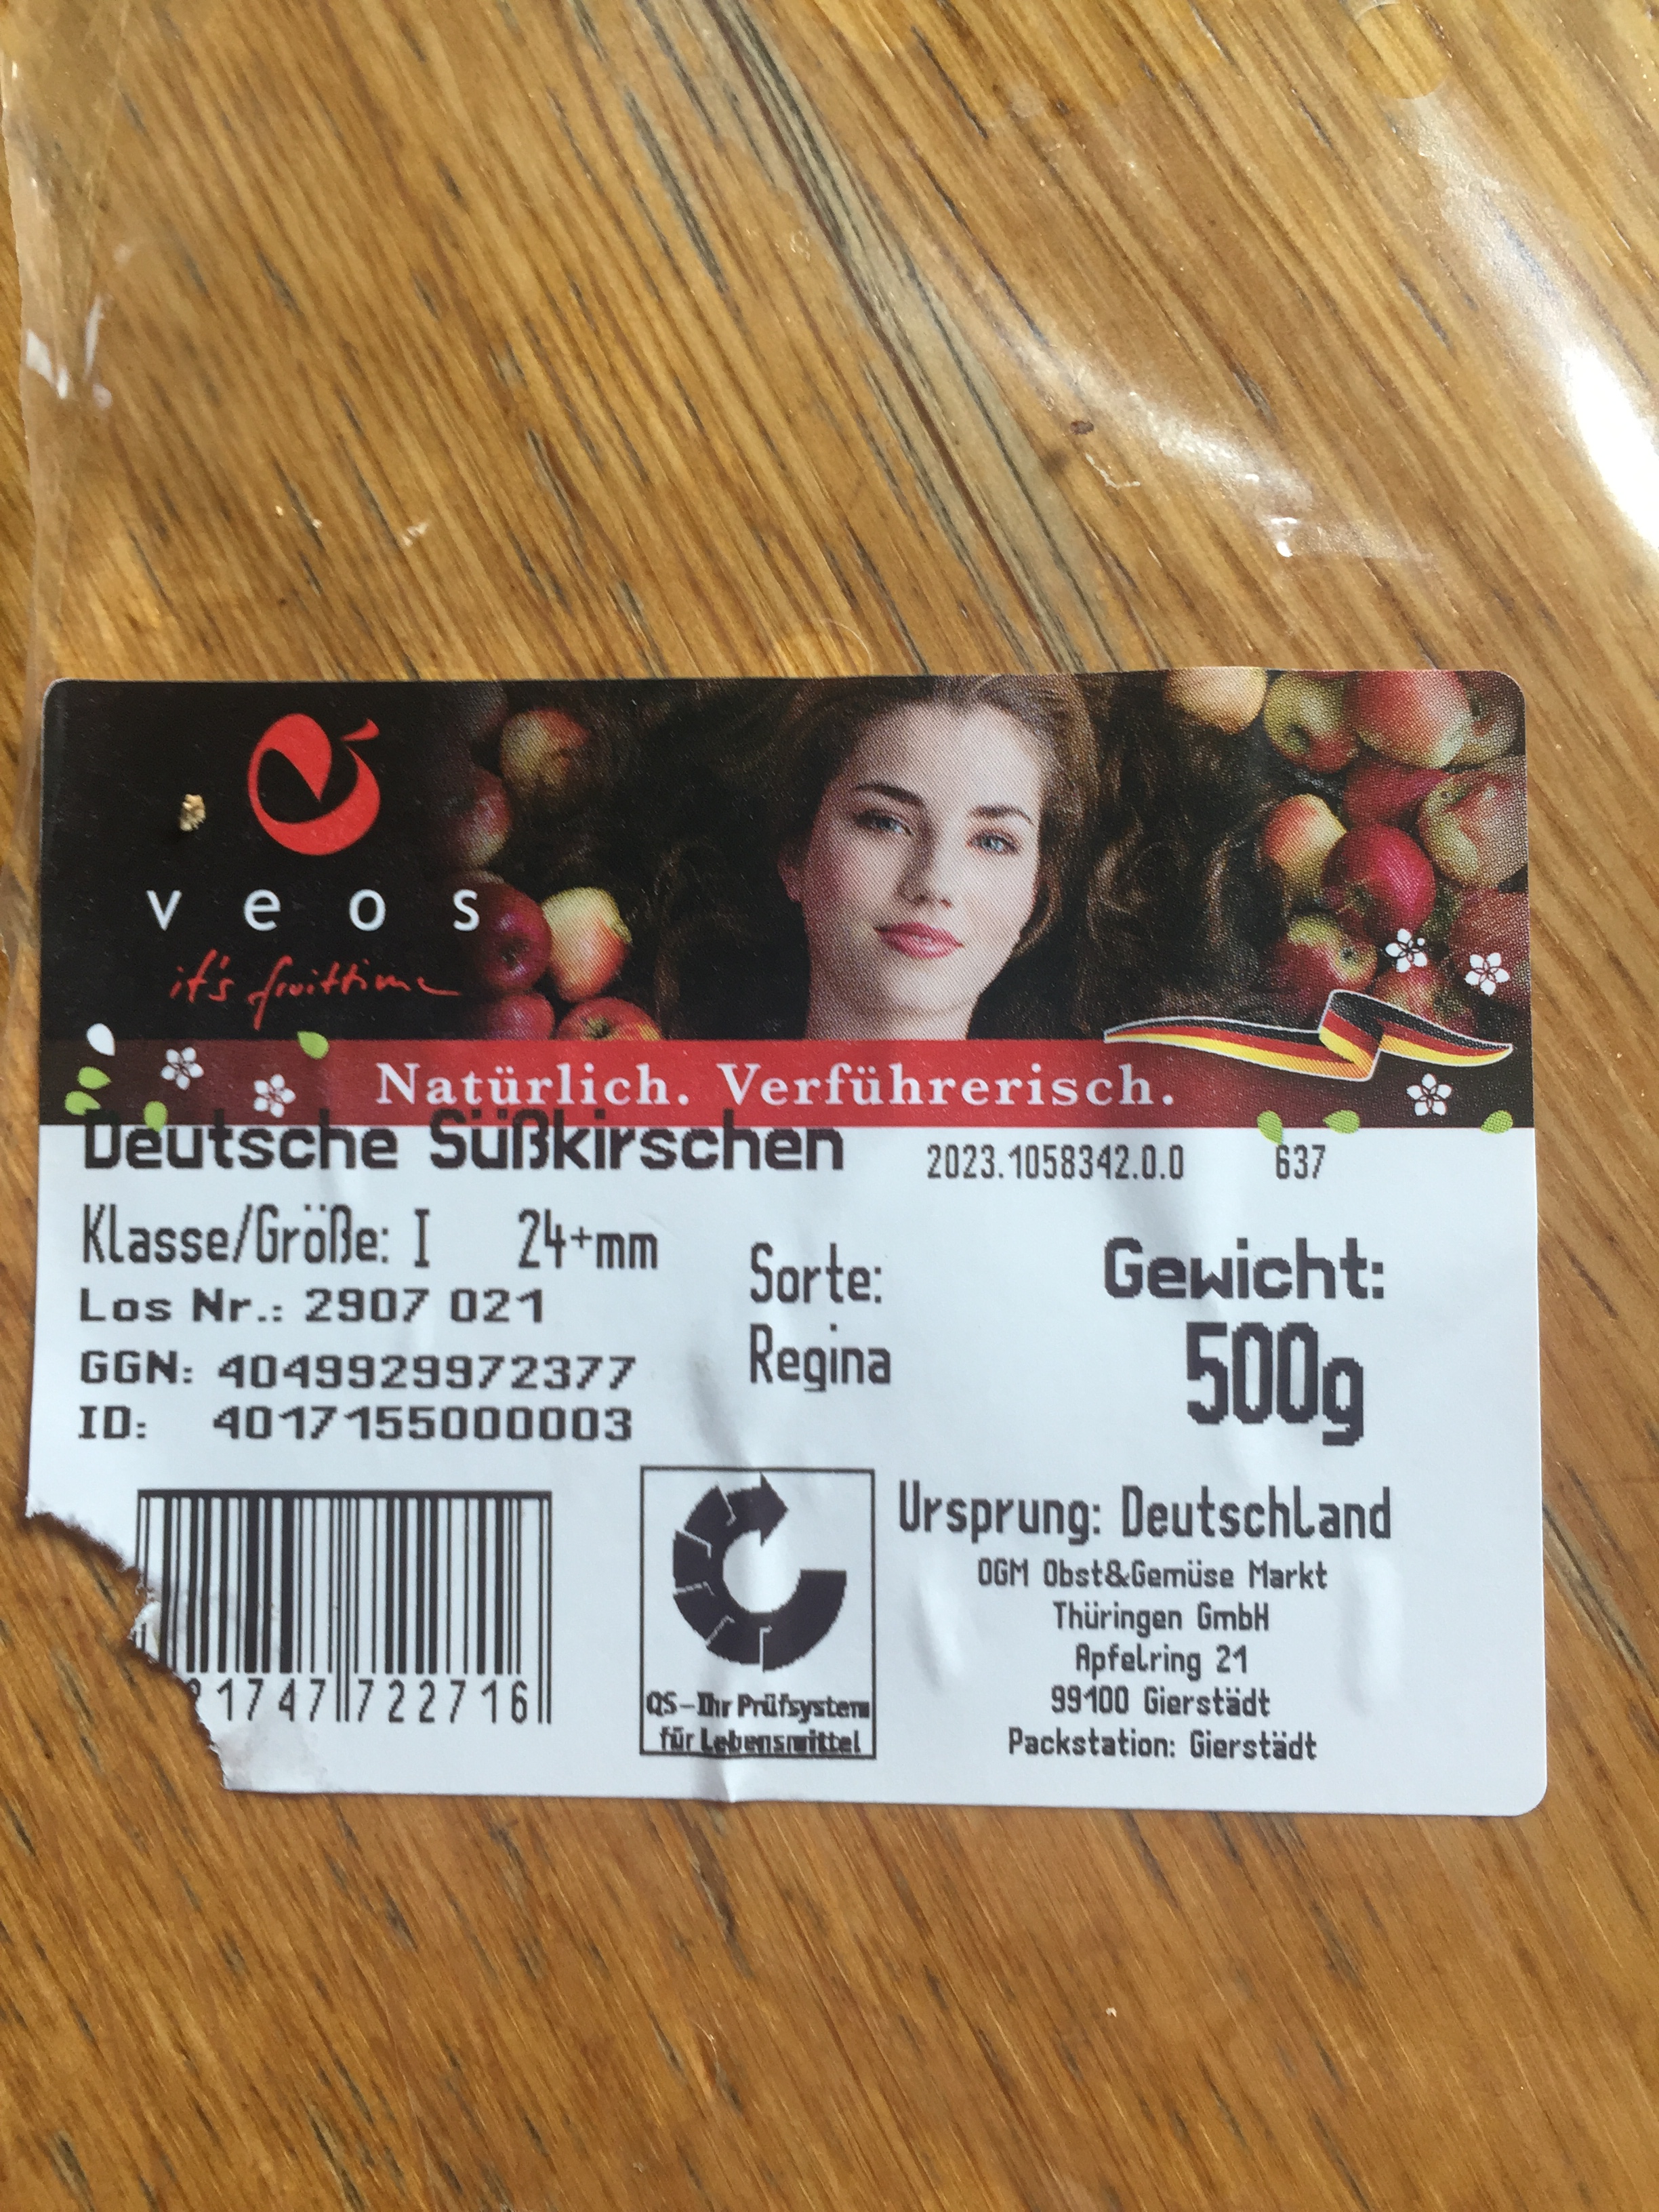 Bild 2 OGM Obst und Gemüse Markt THÜRINGEN GmbH in Gierstädt